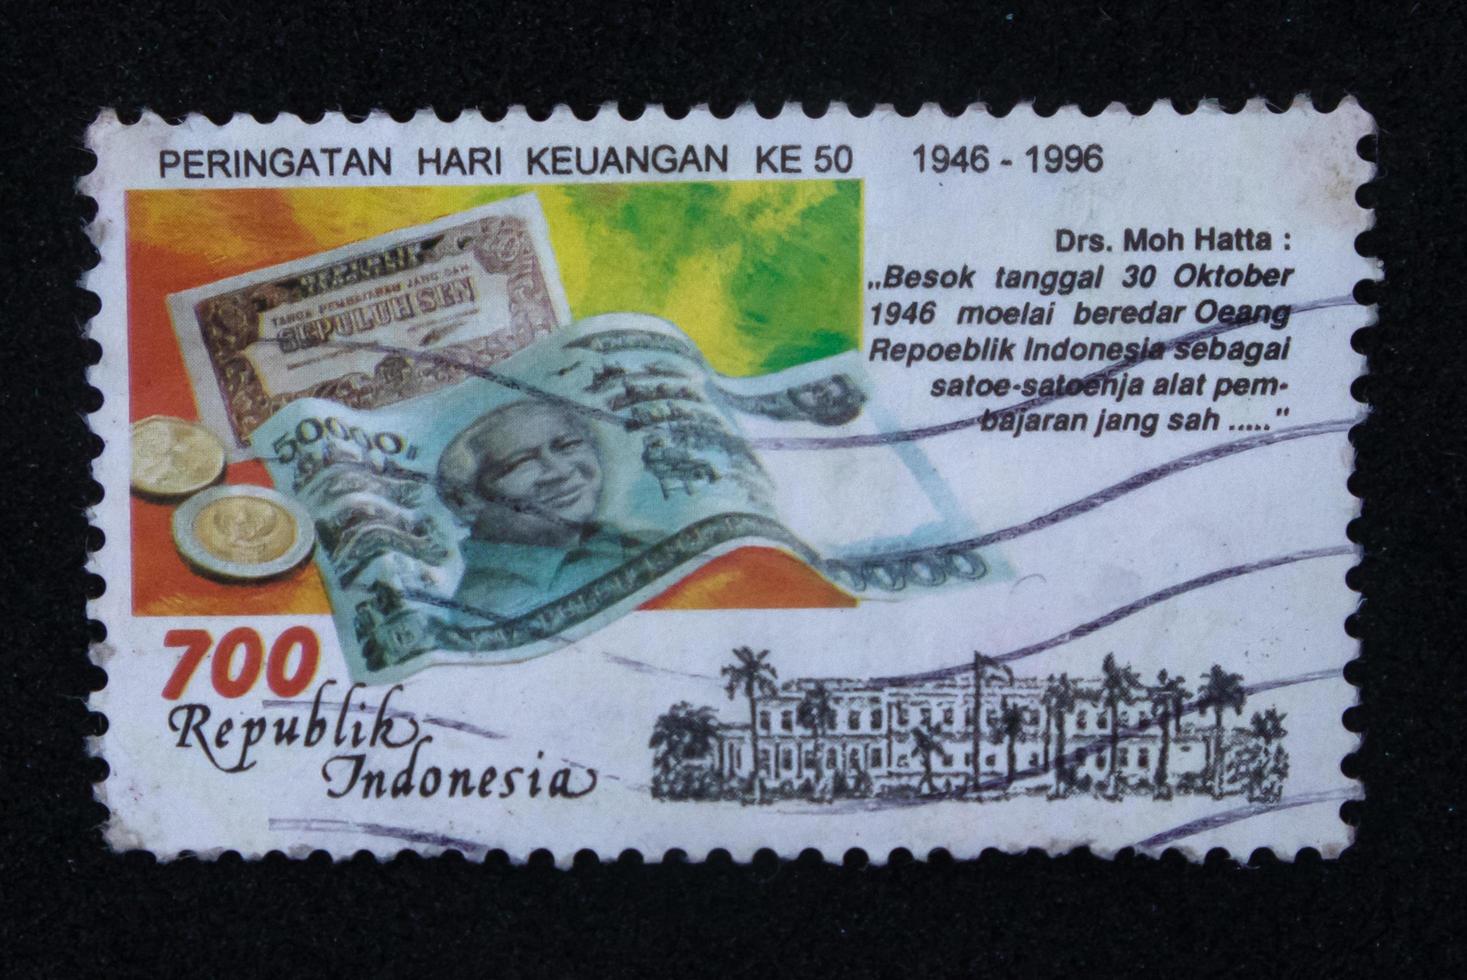 sidoarjo, jawa timur, indonesien, 2022 - philatelie, eine sammlung von briefmarken mit dem thema geldtag illustration illustration foto